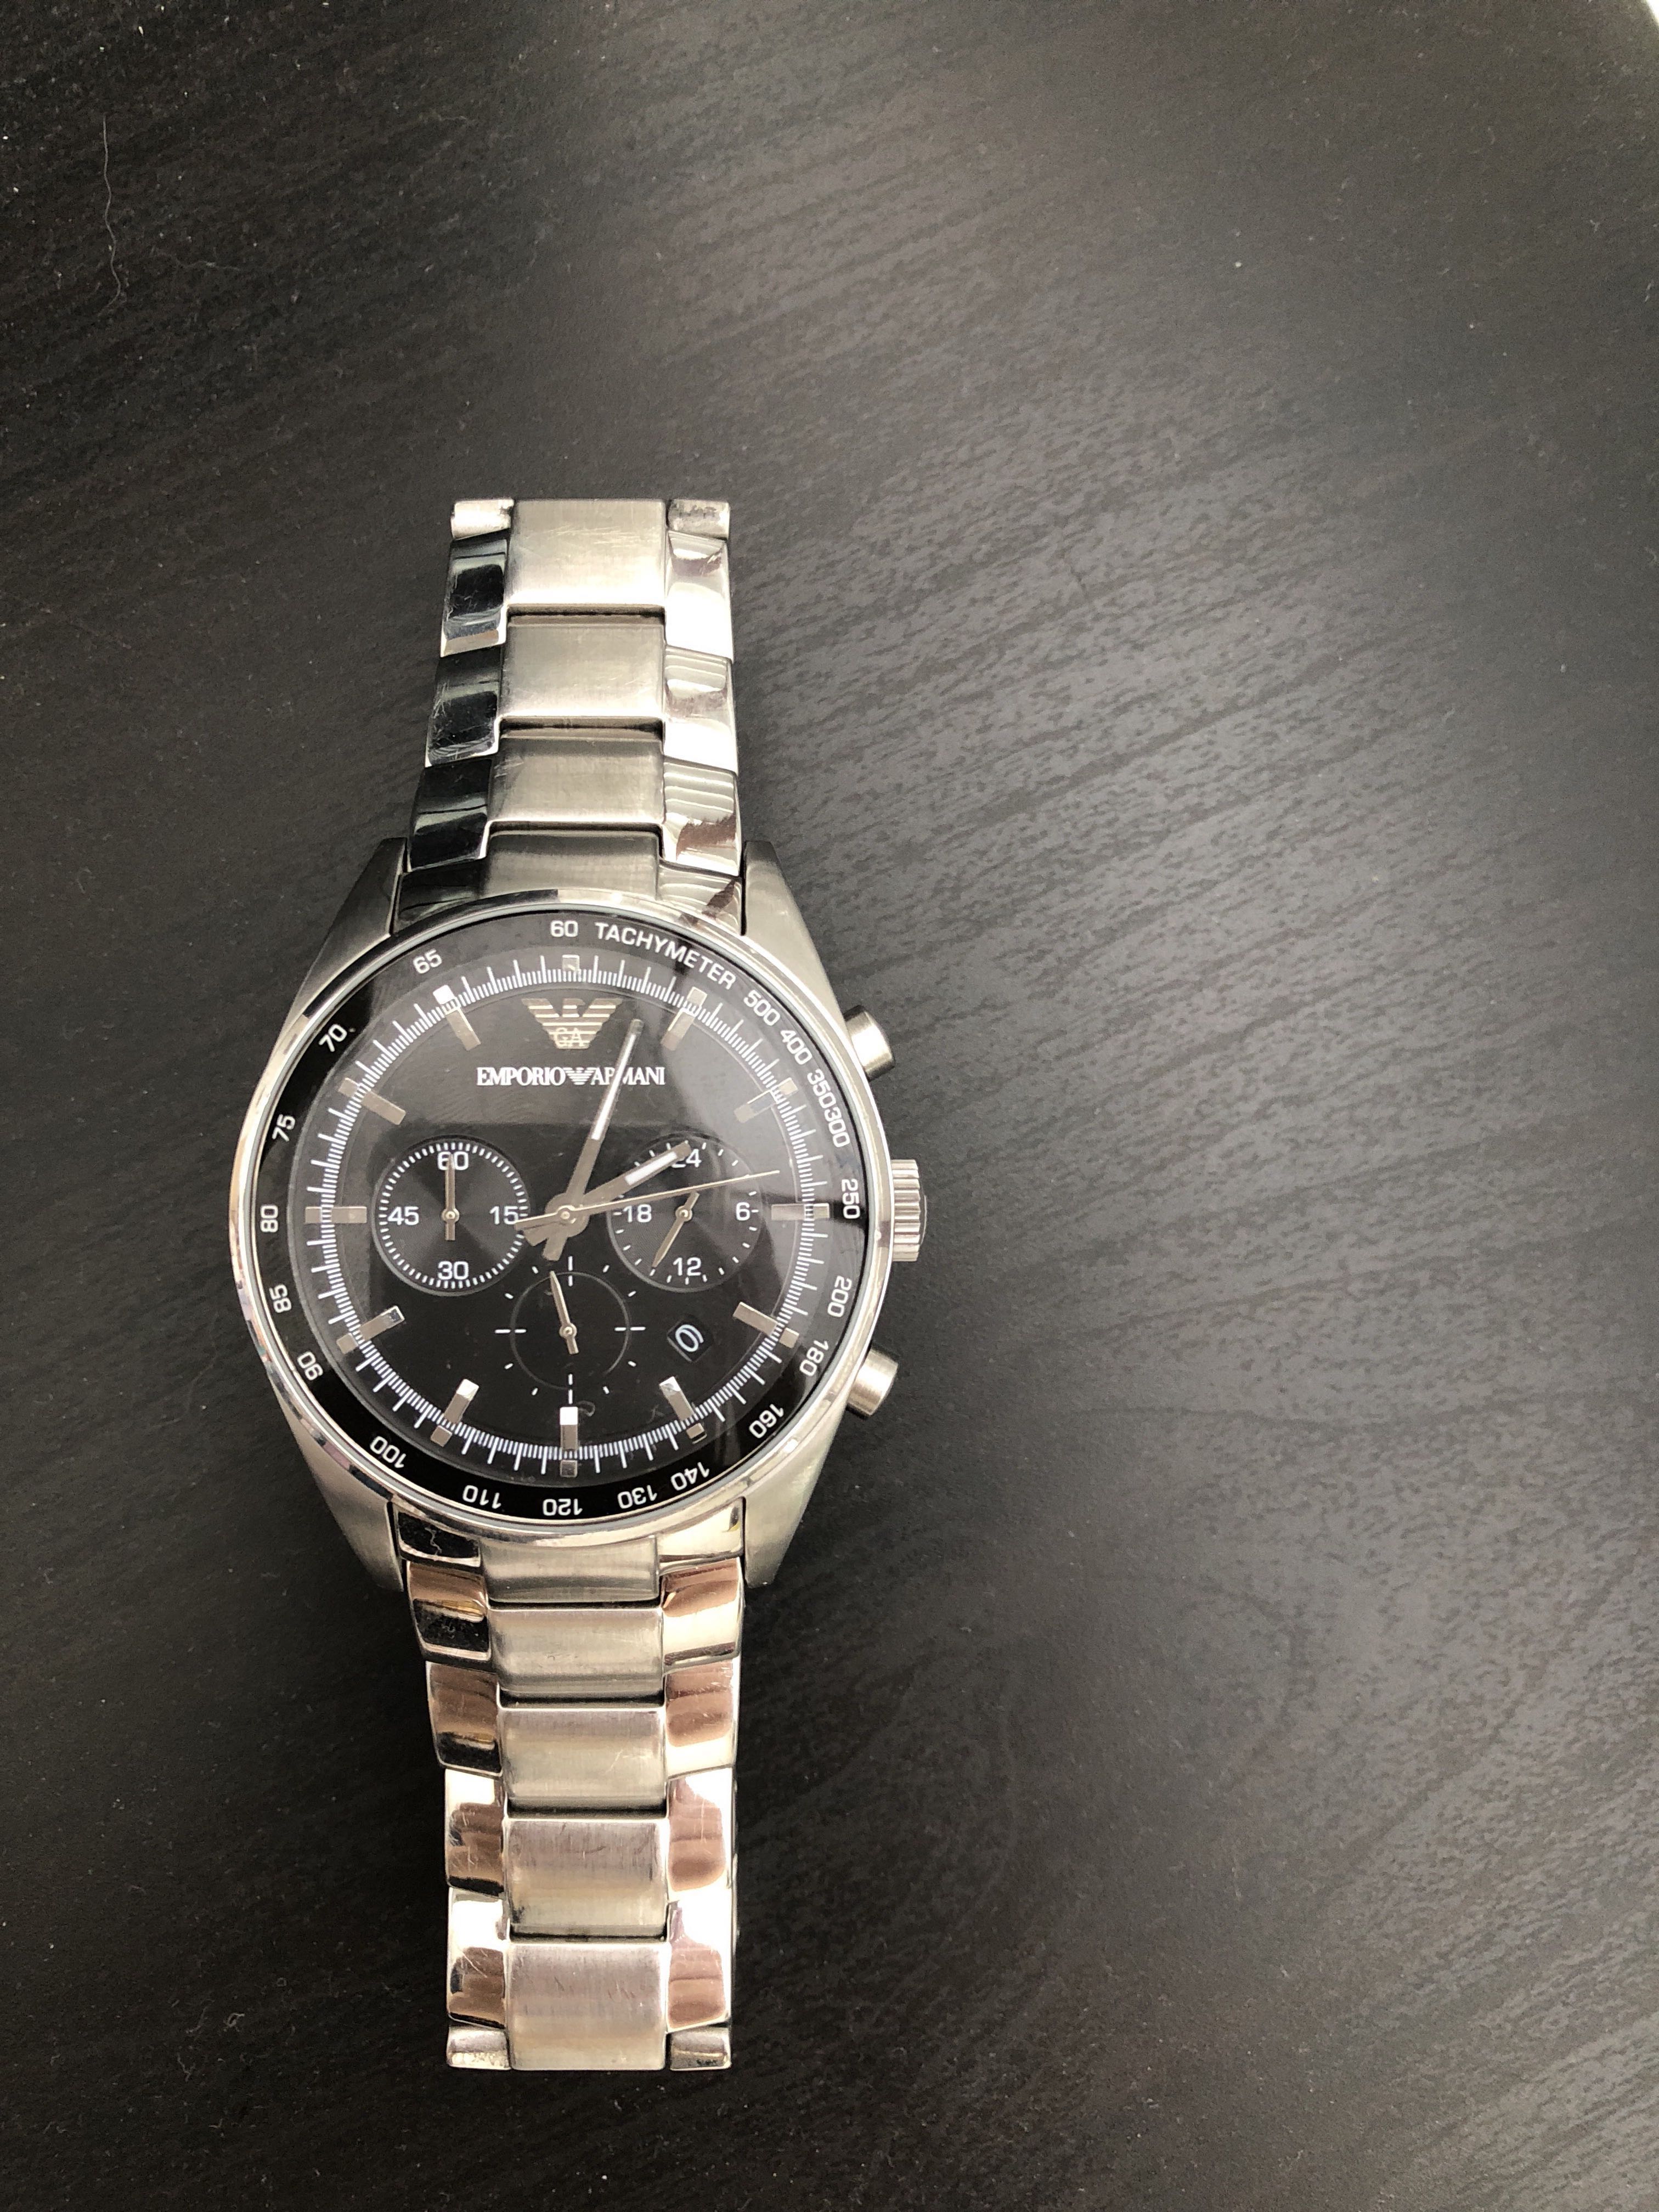 emporio armani watch ar5980